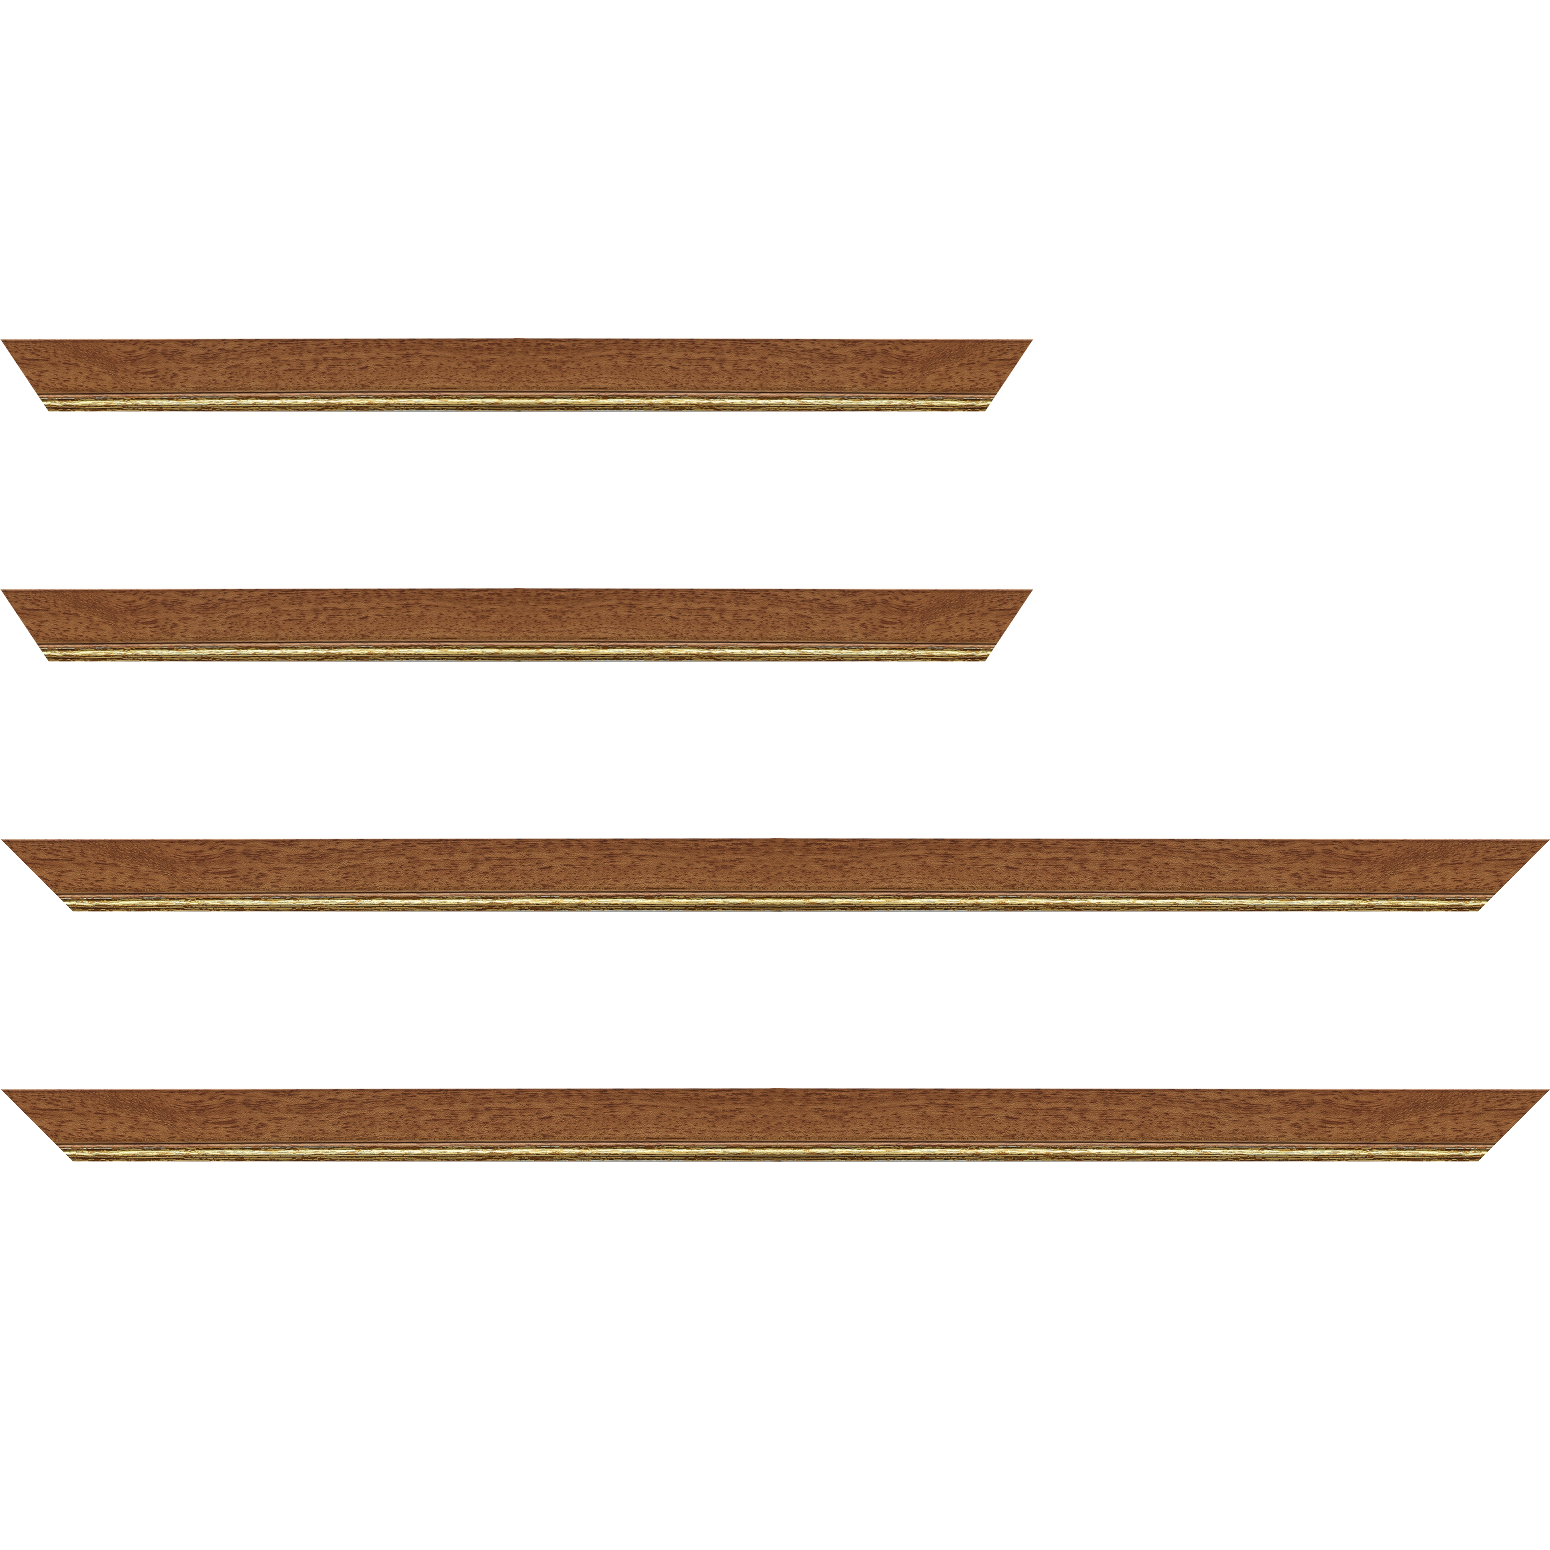 Baguette bois profil plat largeur 2.5cm couleur marron ton bois filet or - 70x100